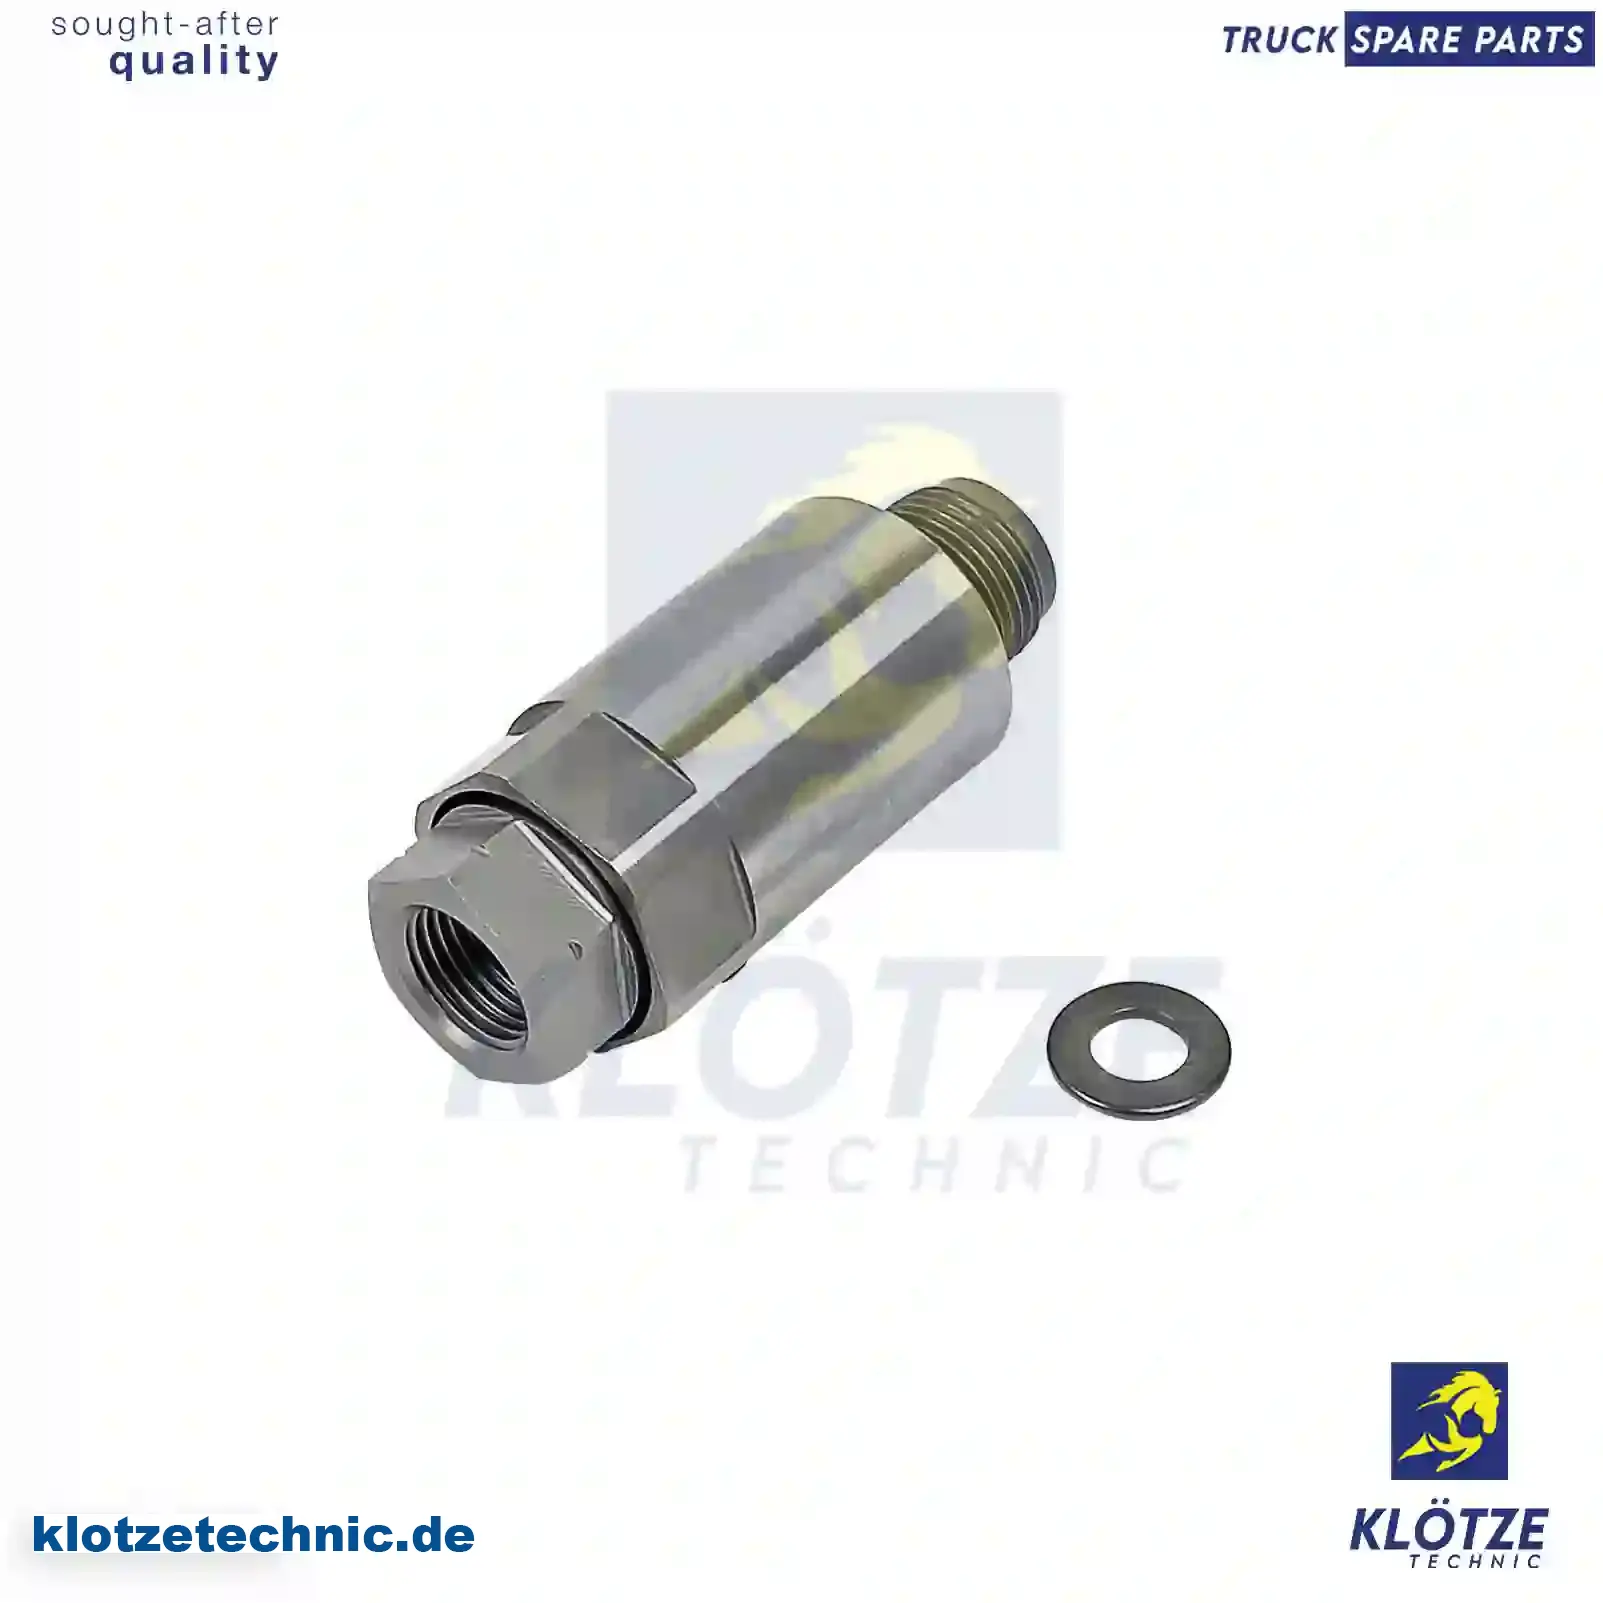 Repair kit, distributing pressure pipe, 1873407, 2002837, 2130086 || Klötze Technic